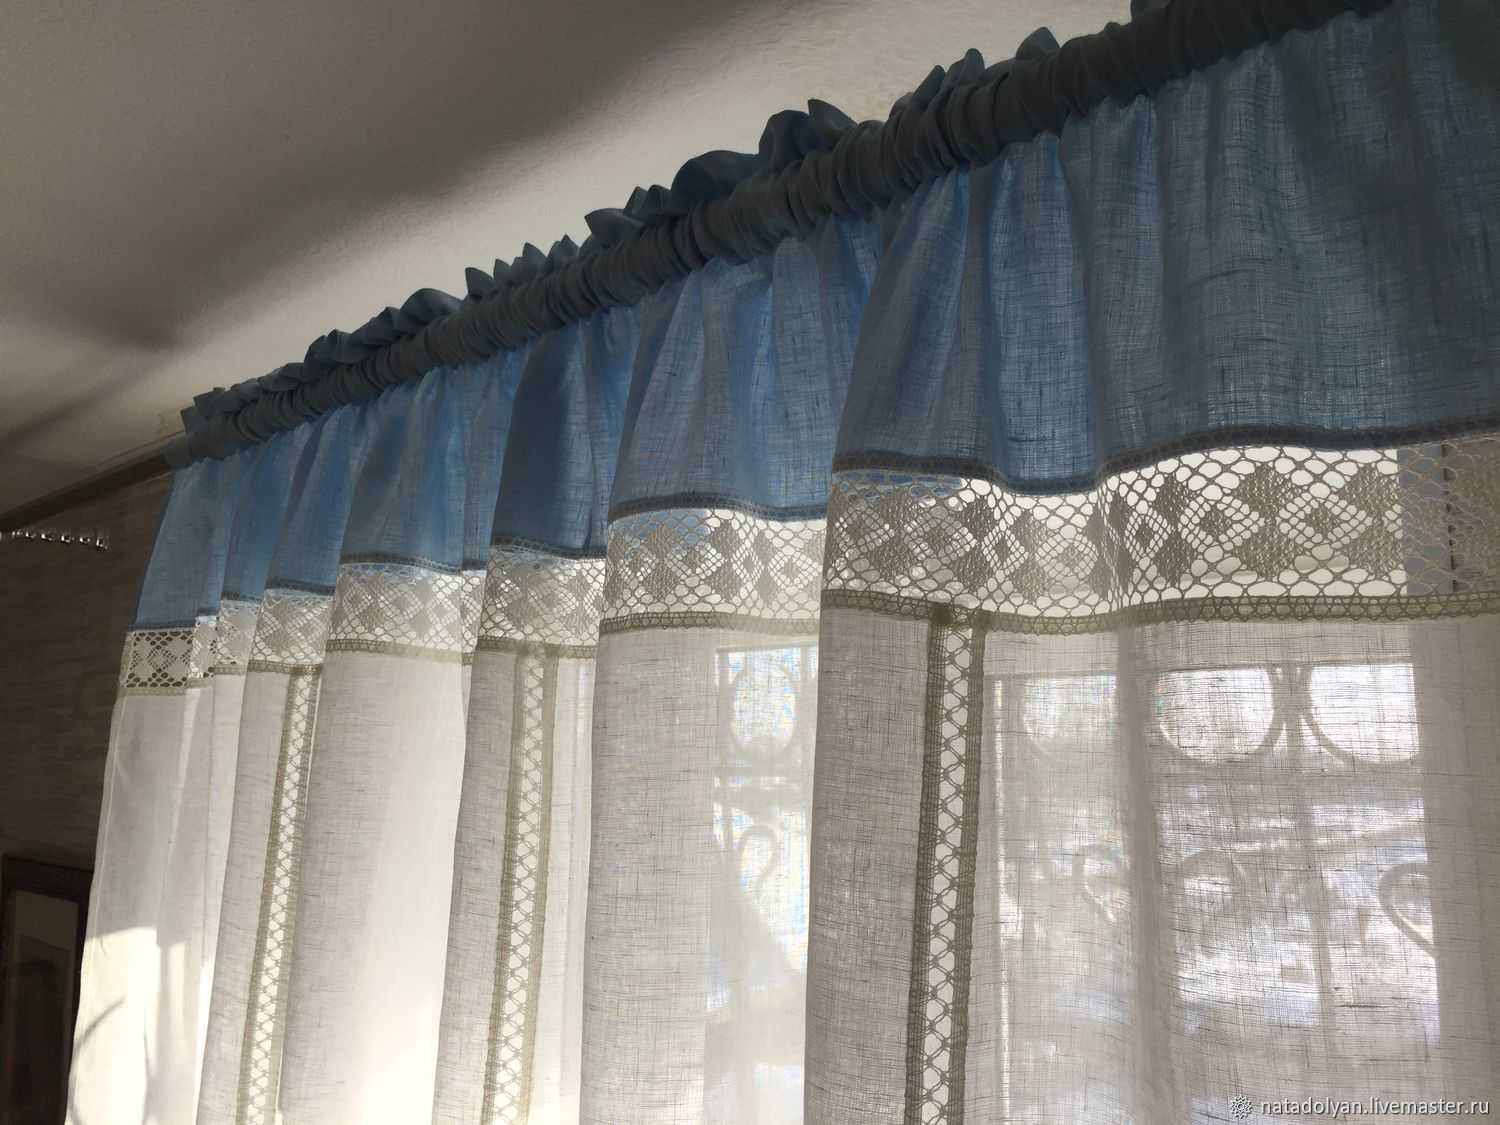 Льняные шторы в интерьере +50 примеров тюли, расцветок на фото